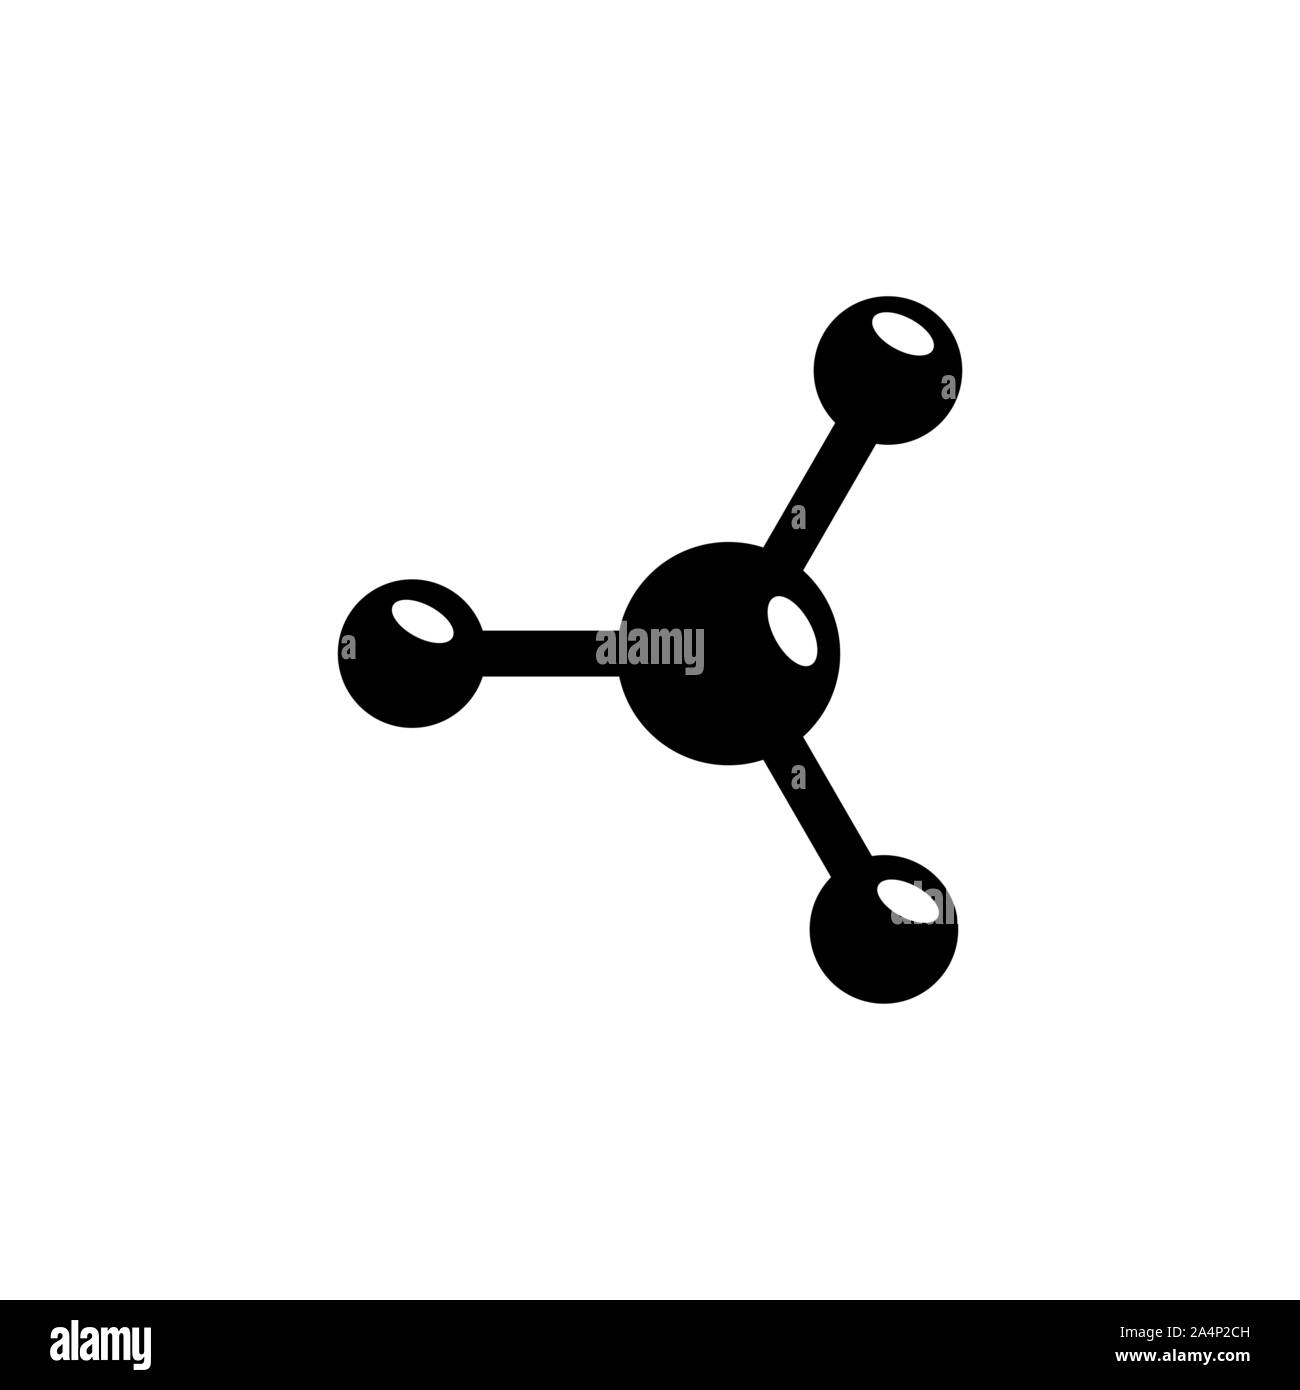 Molecola, neurone, Atom, chimica. Piatto icona Vettore illustrazione. Semplice simbolo nero su sfondo bianco. Molecola, neurone, Atom, chimica desi segno Illustrazione Vettoriale